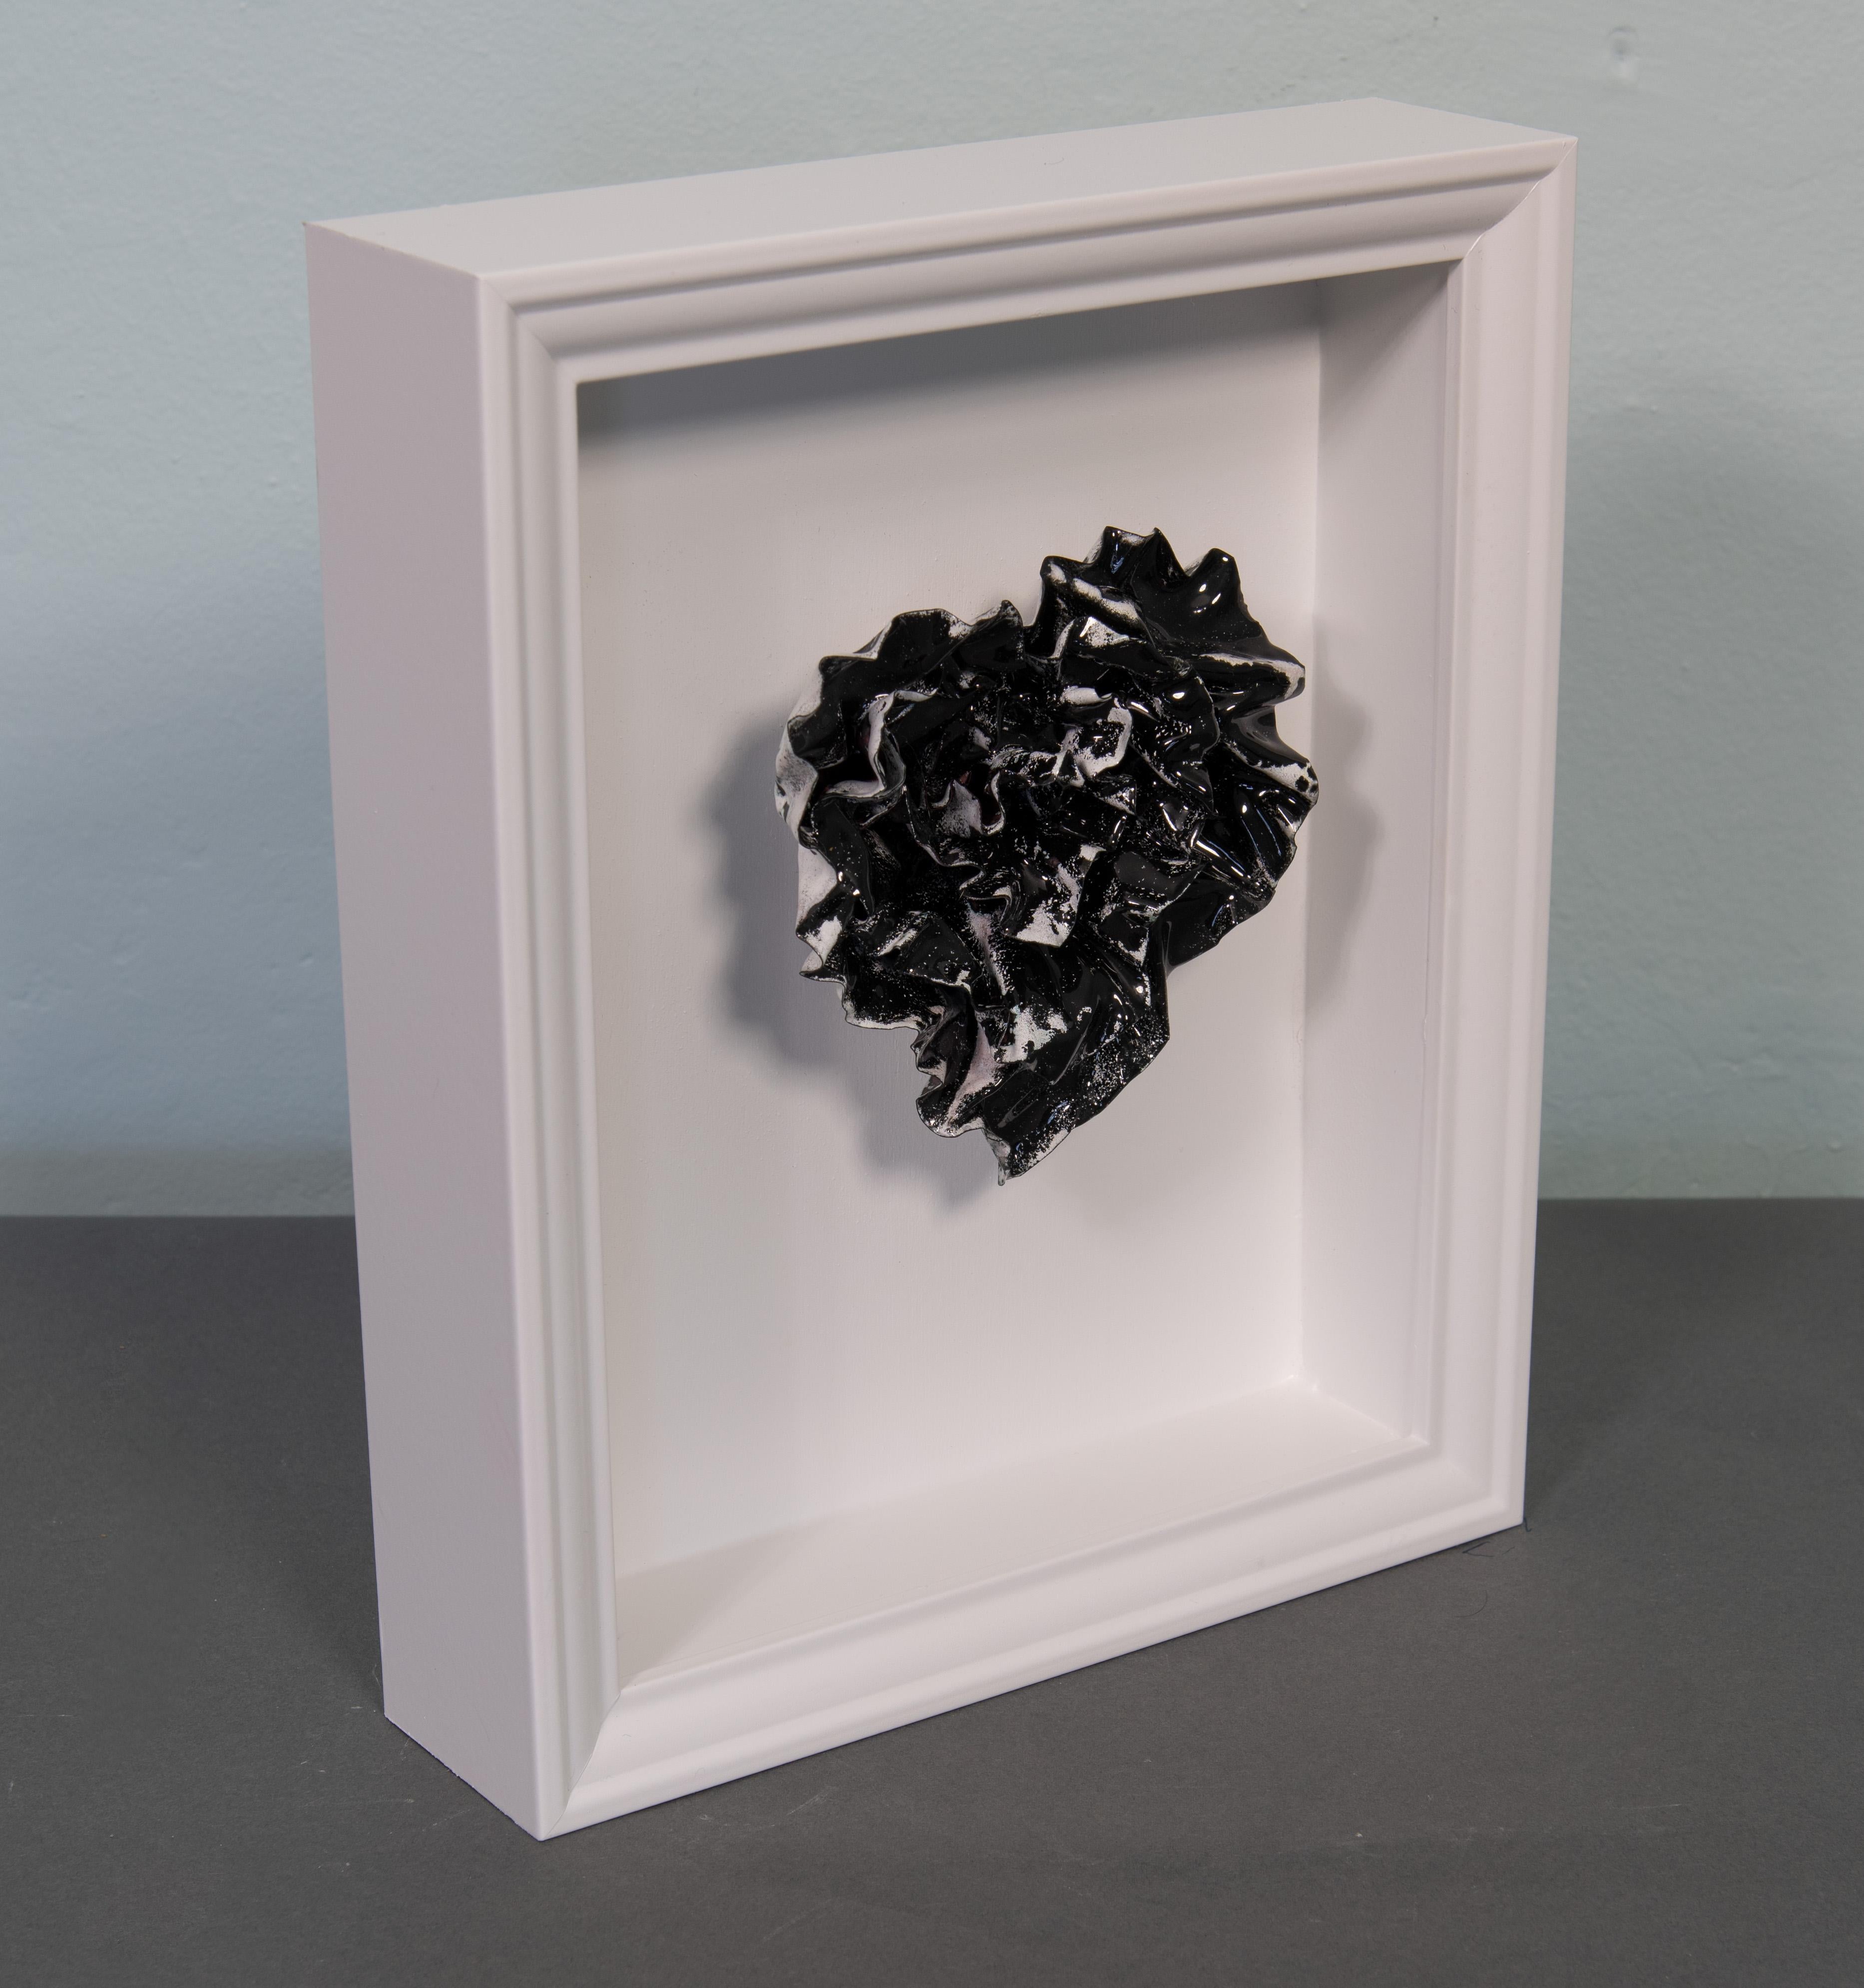 Unforgotten Heart ist eine atemberaubende abstrakte Herzskulptur der Künstlerin Sherry Been.
Diese Metallskulptur zeichnet sich durch einen auffälligen Kontrast von schwarzer und weißer Emaille aus, der den Kampf zwischen Sichtbarkeit und